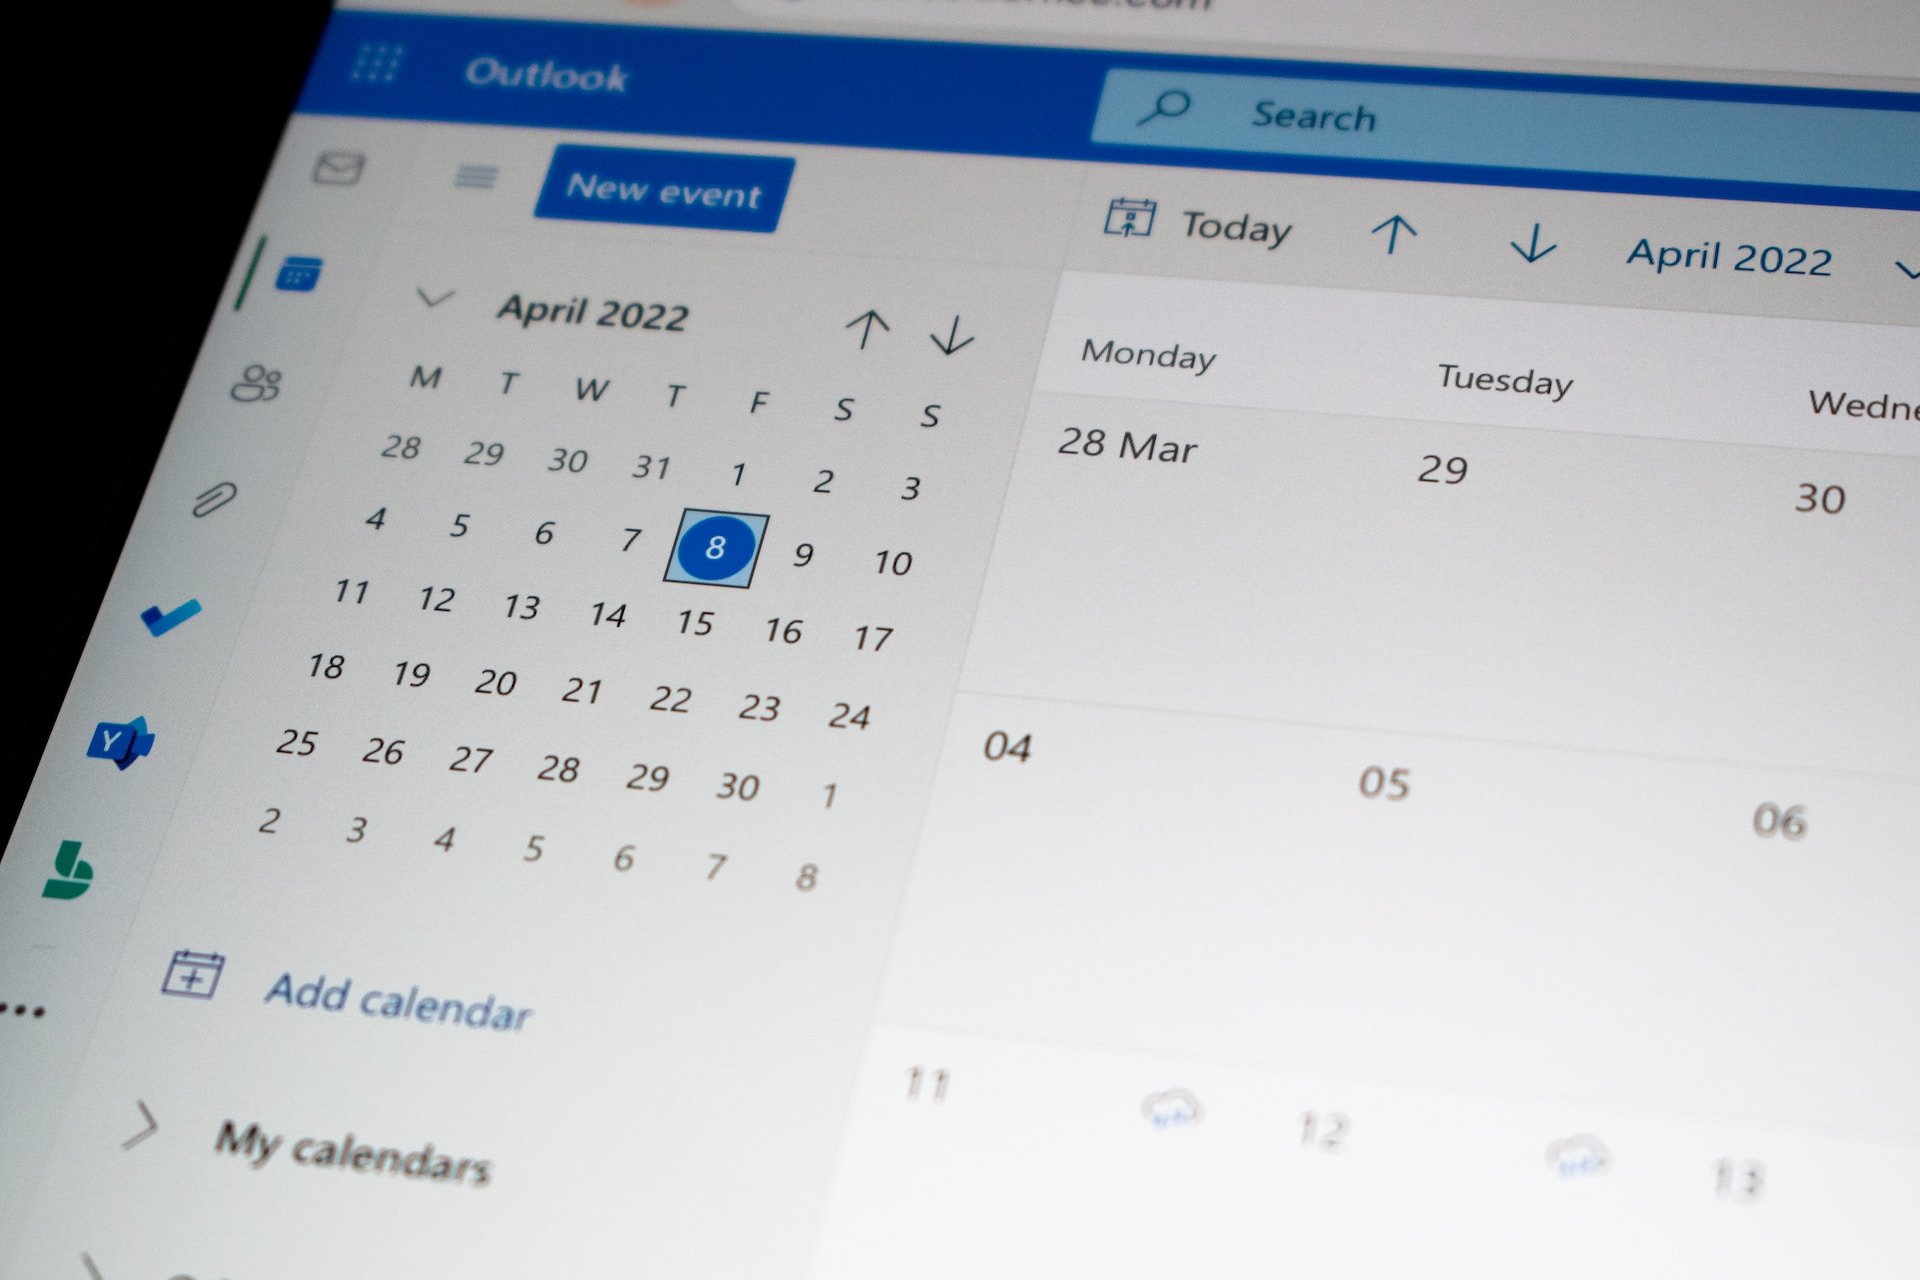 Develop an email marketing calendar